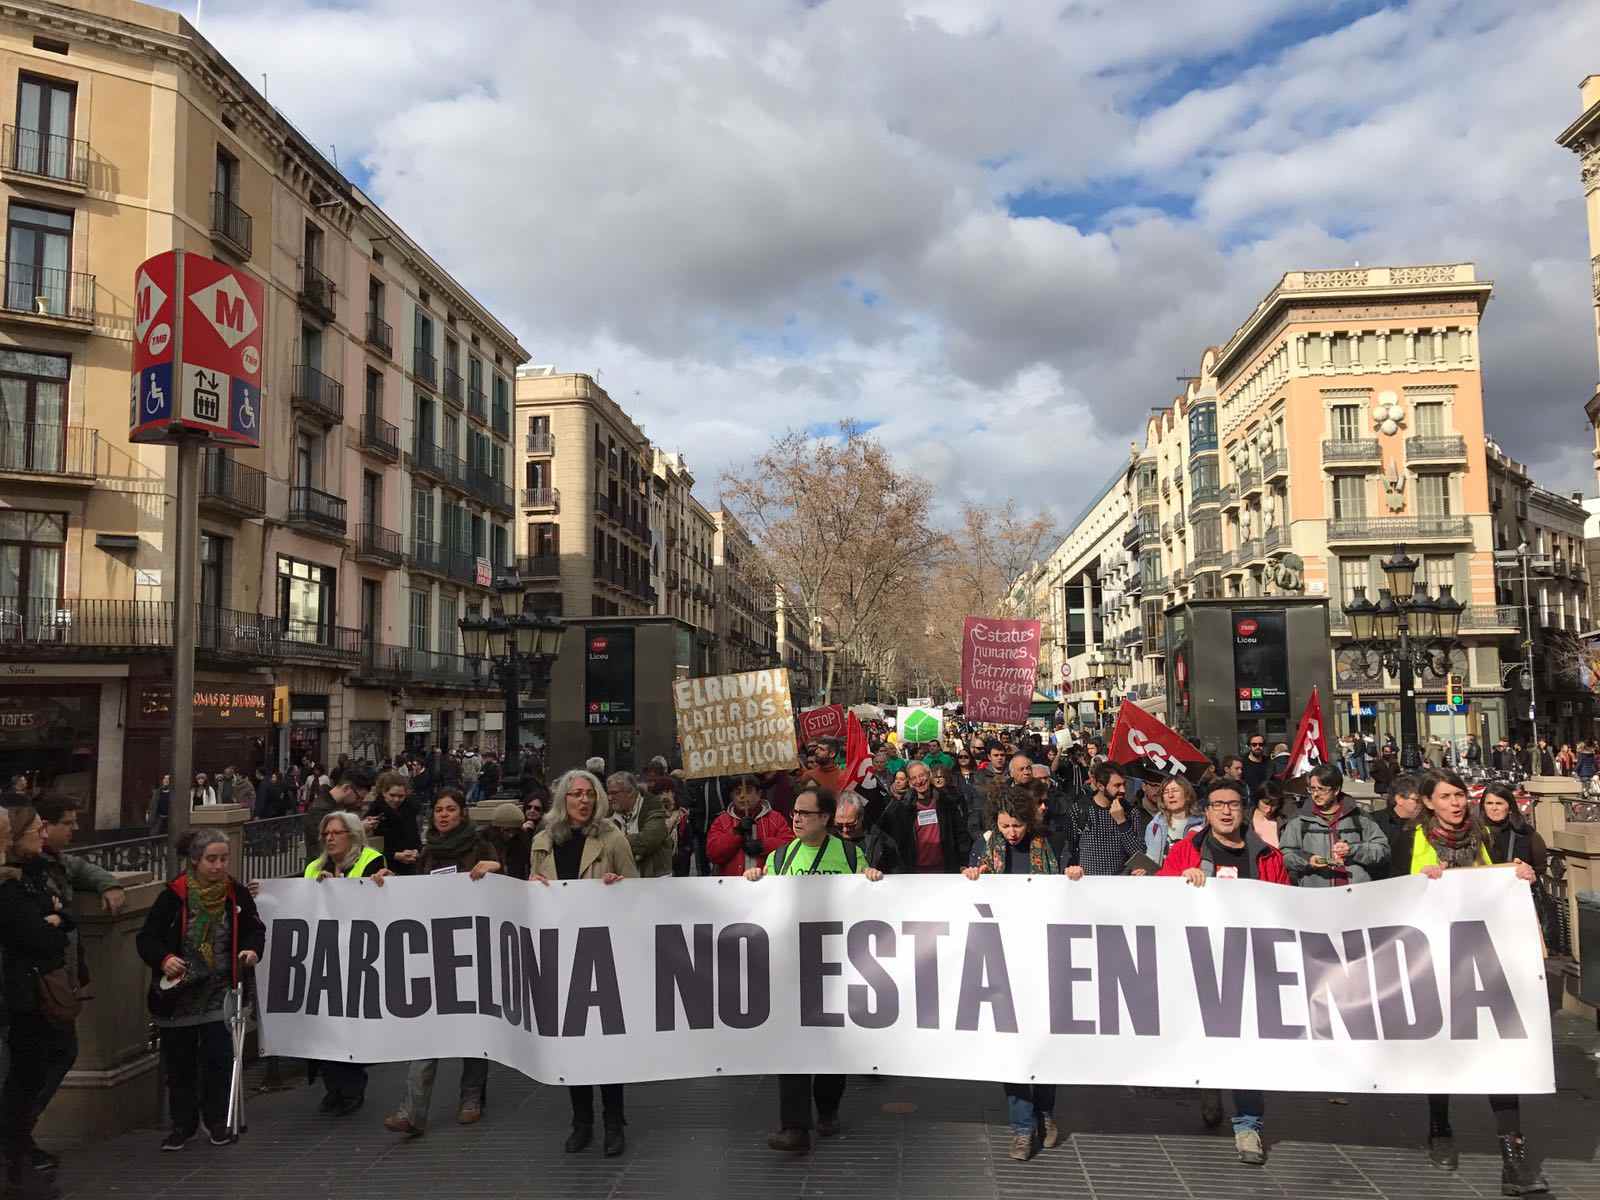 "Barcelona no està en venda": manifestació a la Rambla contra el turisme